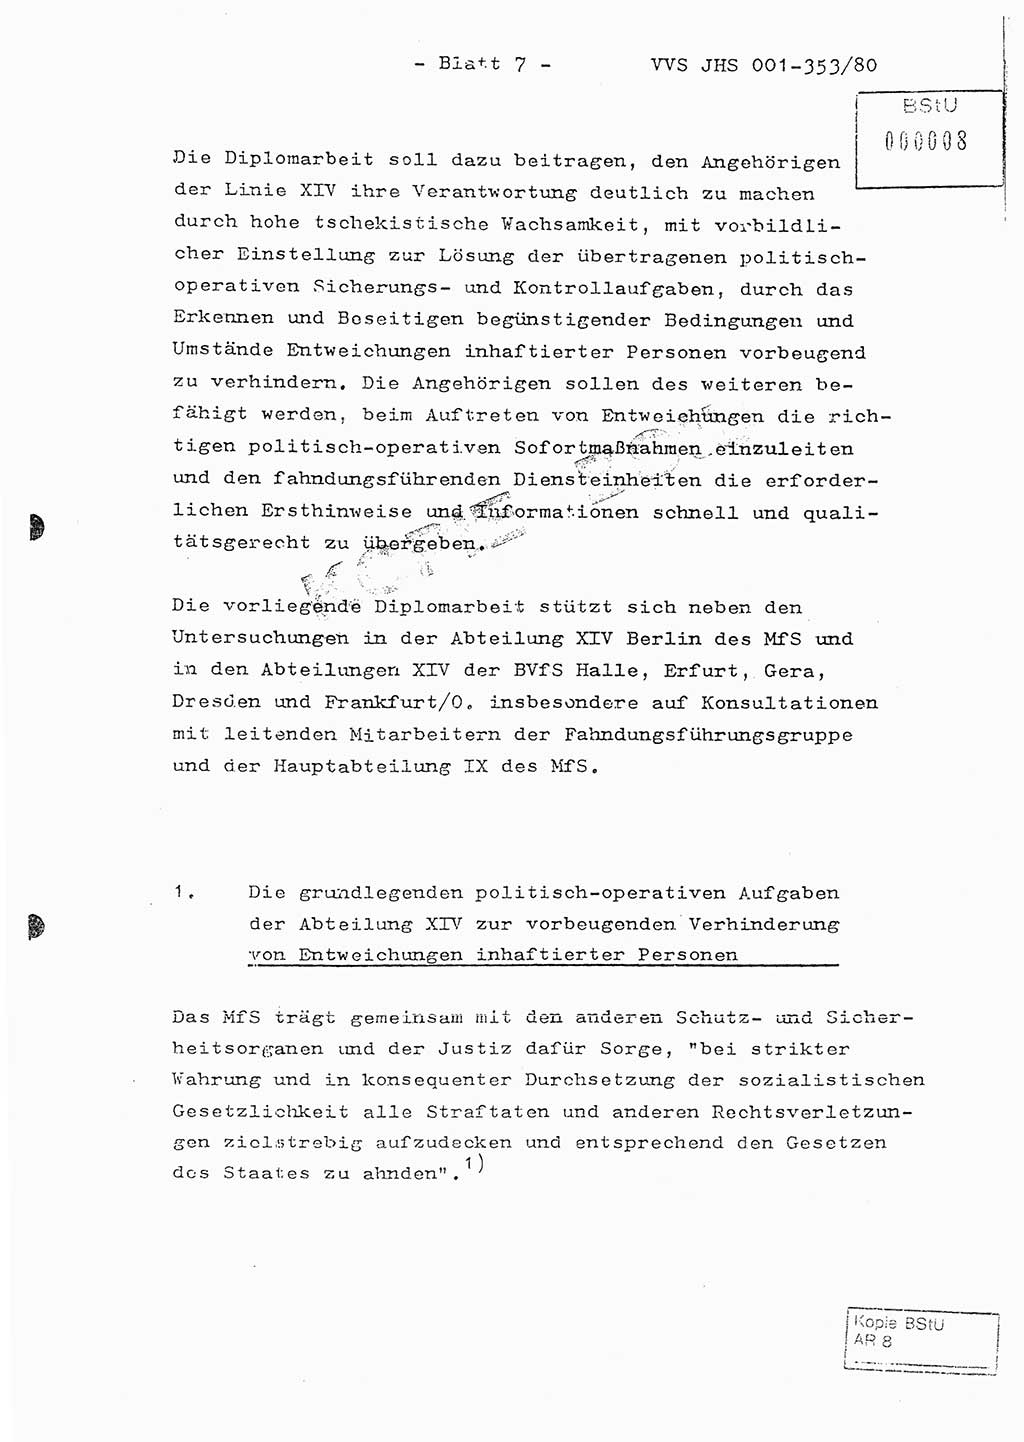 Diplomarbeit Hauptmann Joachim Klaumünzner (Abt. ⅩⅣ), Ministerium für Staatssicherheit (MfS) [Deutsche Demokratische Republik (DDR)], Juristische Hochschule (JHS), Vertrauliche Verschlußsache (VVS) o001-353/80, Potsdam 1980, Blatt 7 (Dipl.-Arb. MfS DDR JHS VVS o001-353/80 1980, Bl. 7)